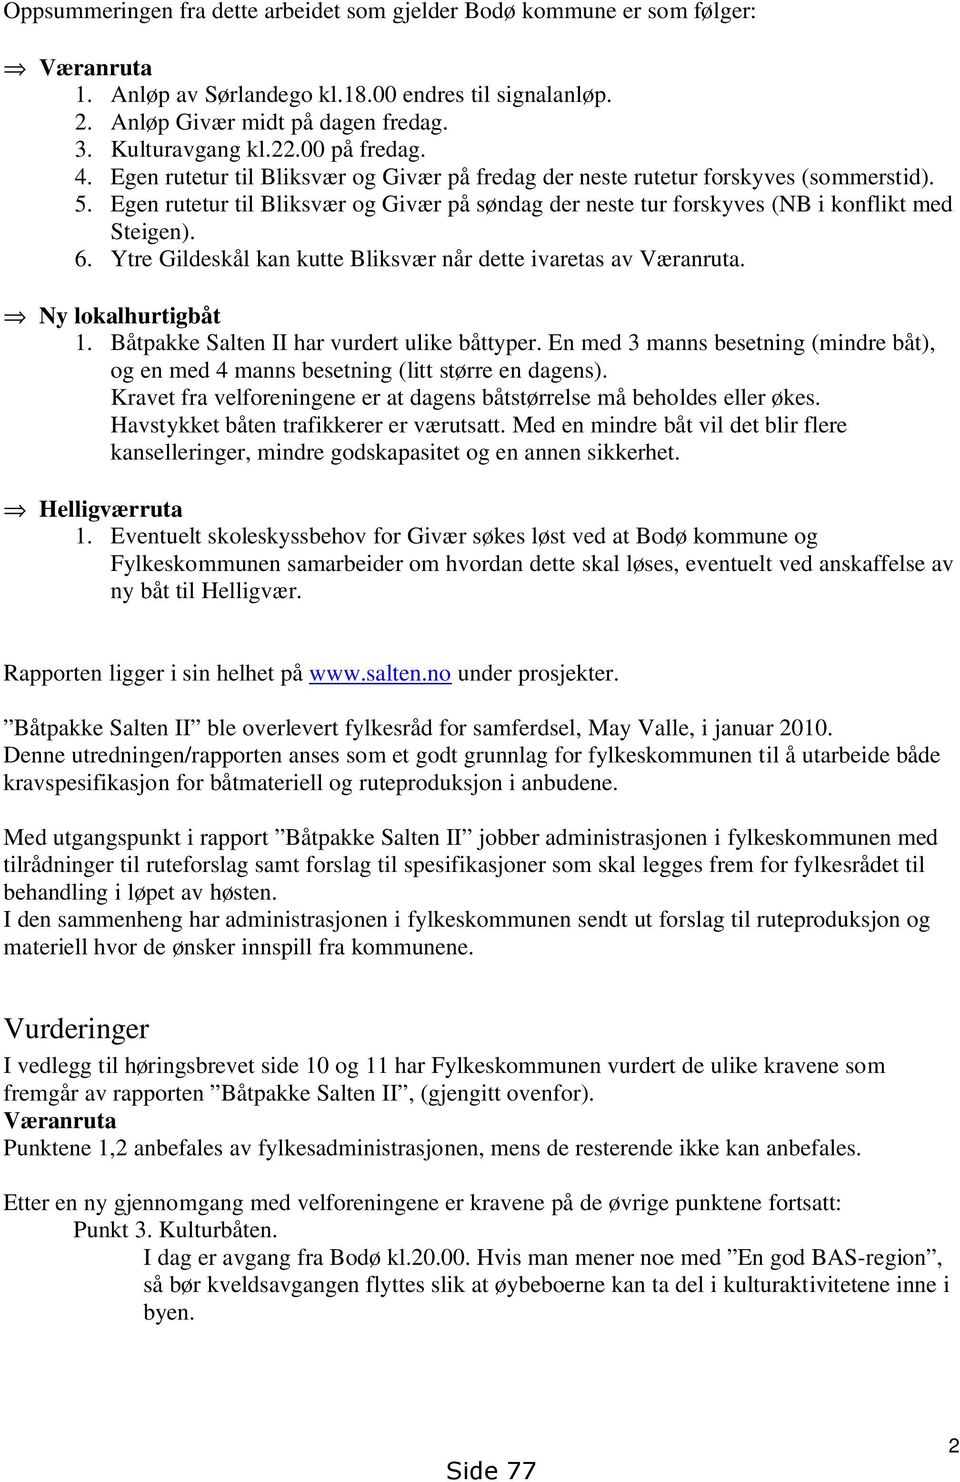 Egen rutetur til Bliksvær og Givær på søndag der neste tur forskyves (NB i konflikt med Steigen). 6. Ytre Gildeskål kan kutte Bliksvær når dette ivaretas av Væranruta. Ny lokalhurtigbåt 1.